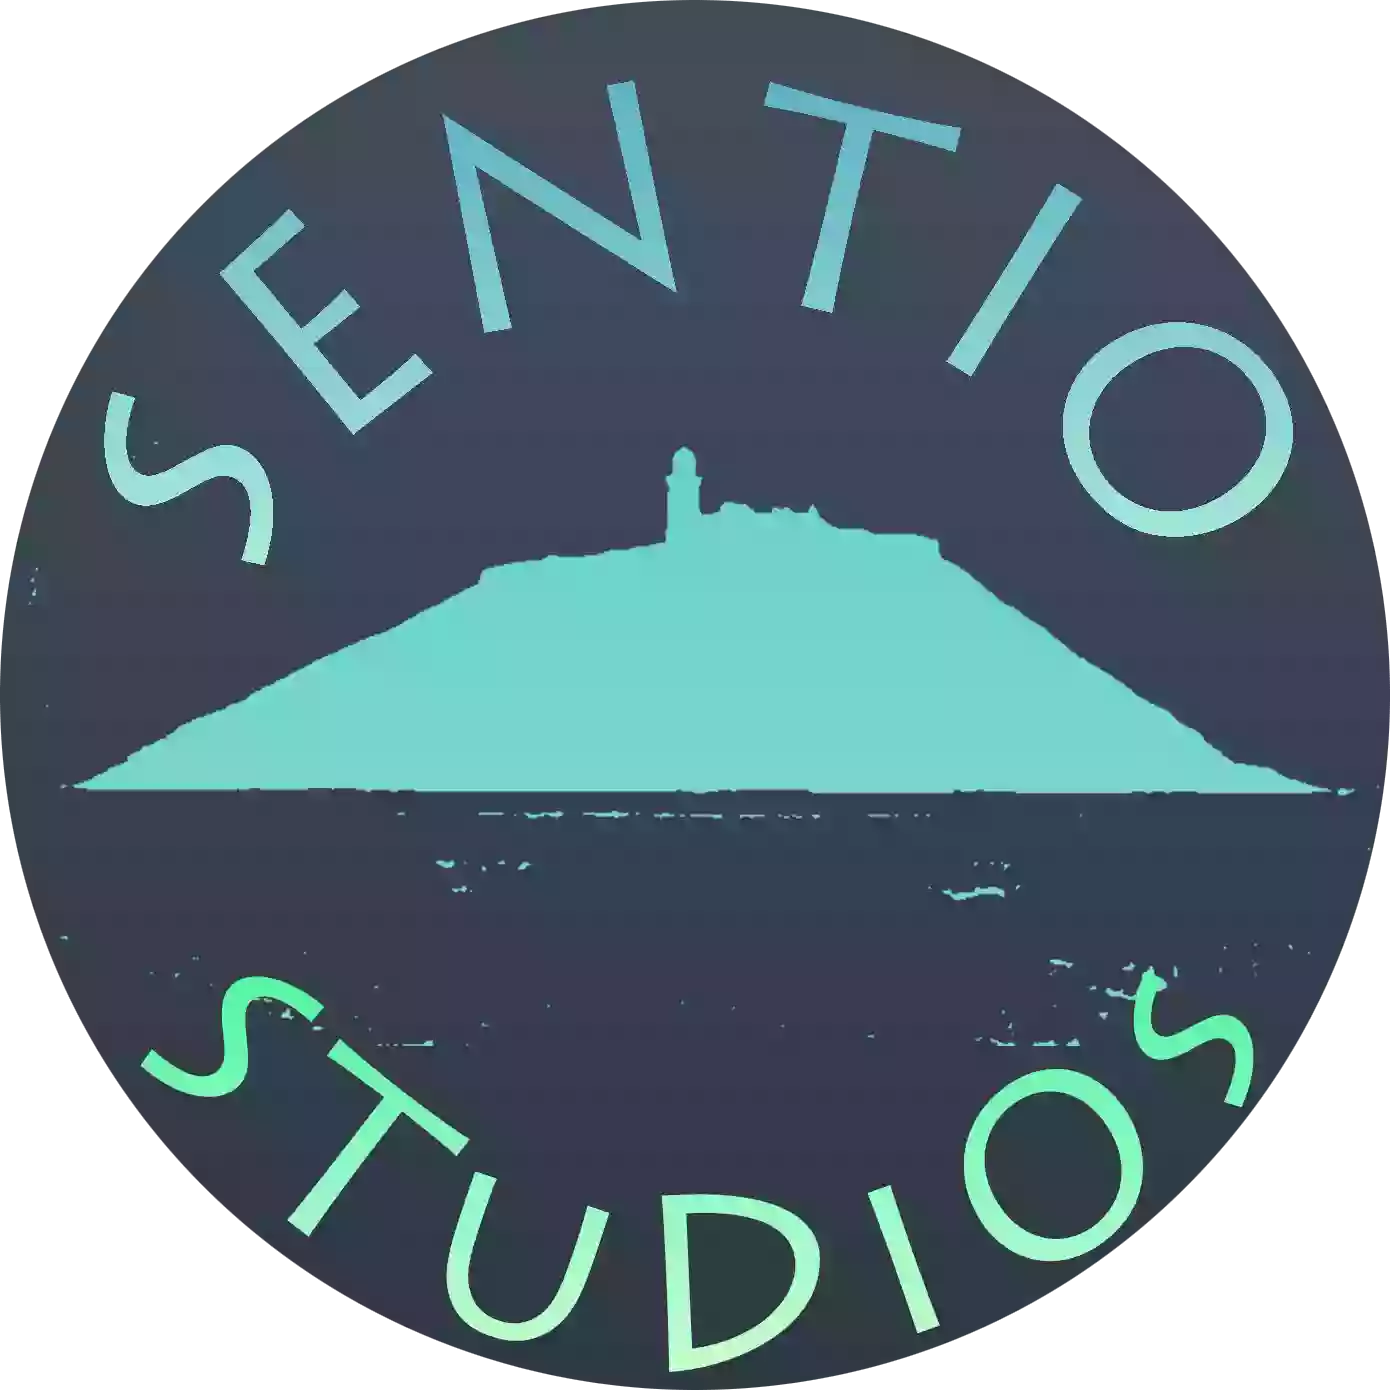 Sentio Studios